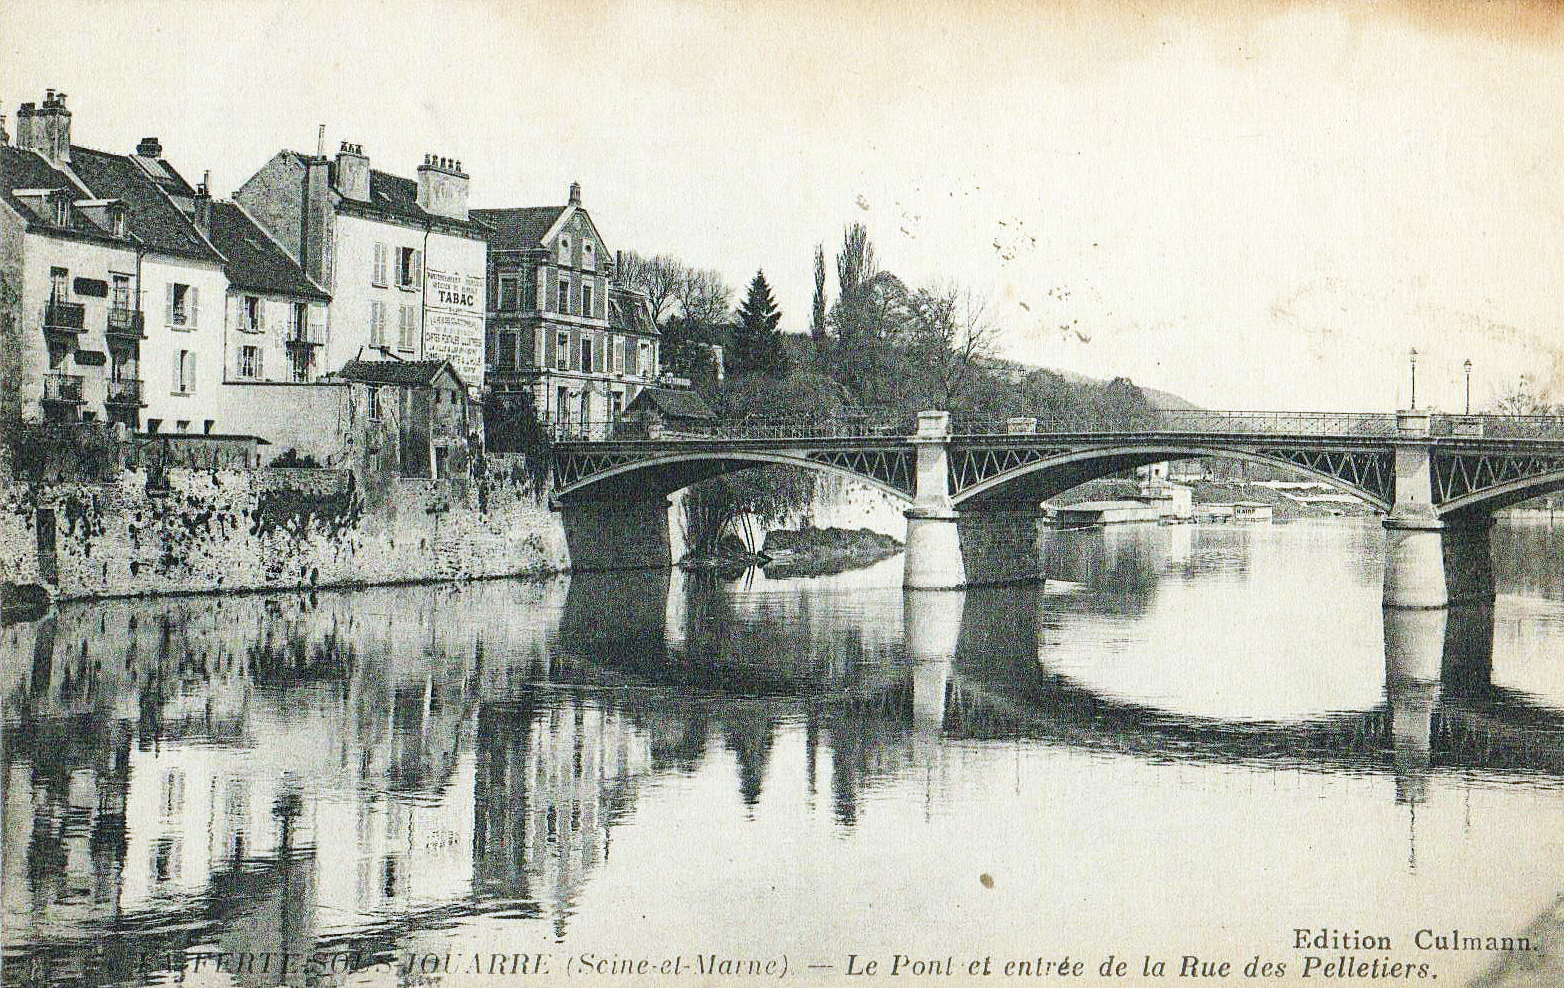 Le pont et entrée de la rue des Pelletiers